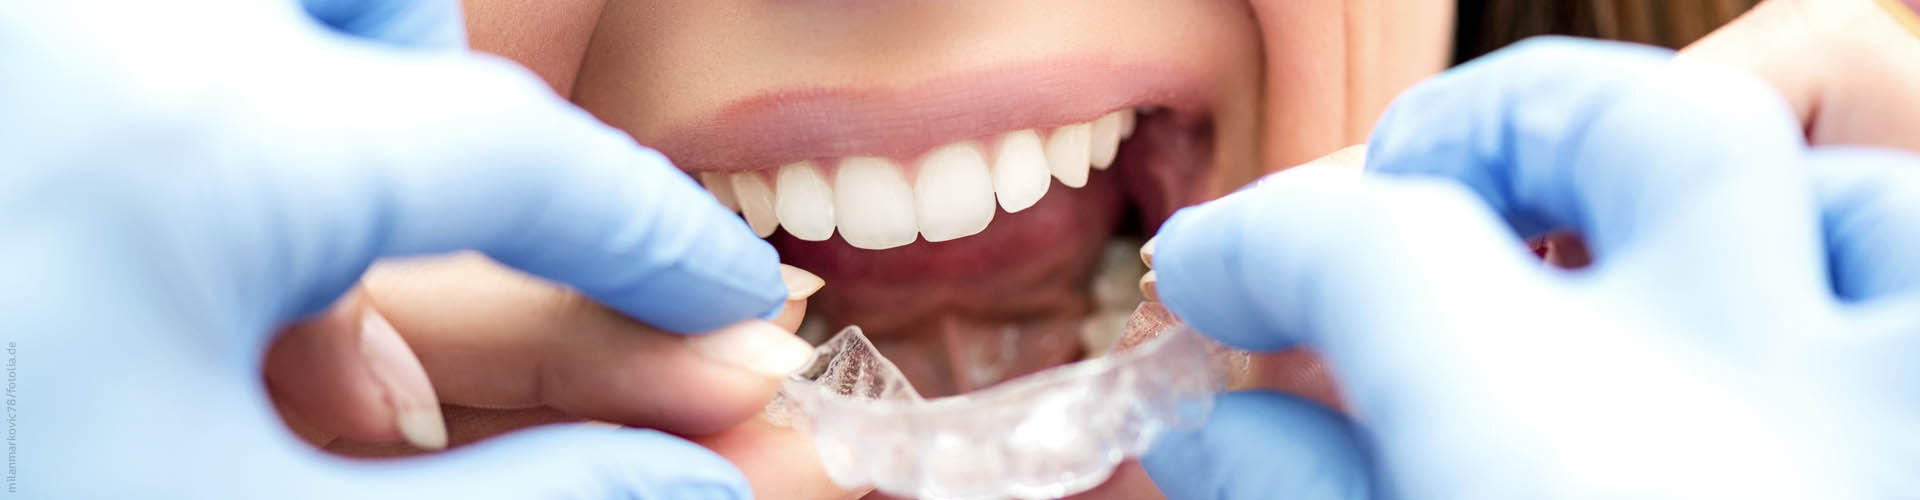 Probleme mit Zahnspangen, Alignern, und Zahnschienen